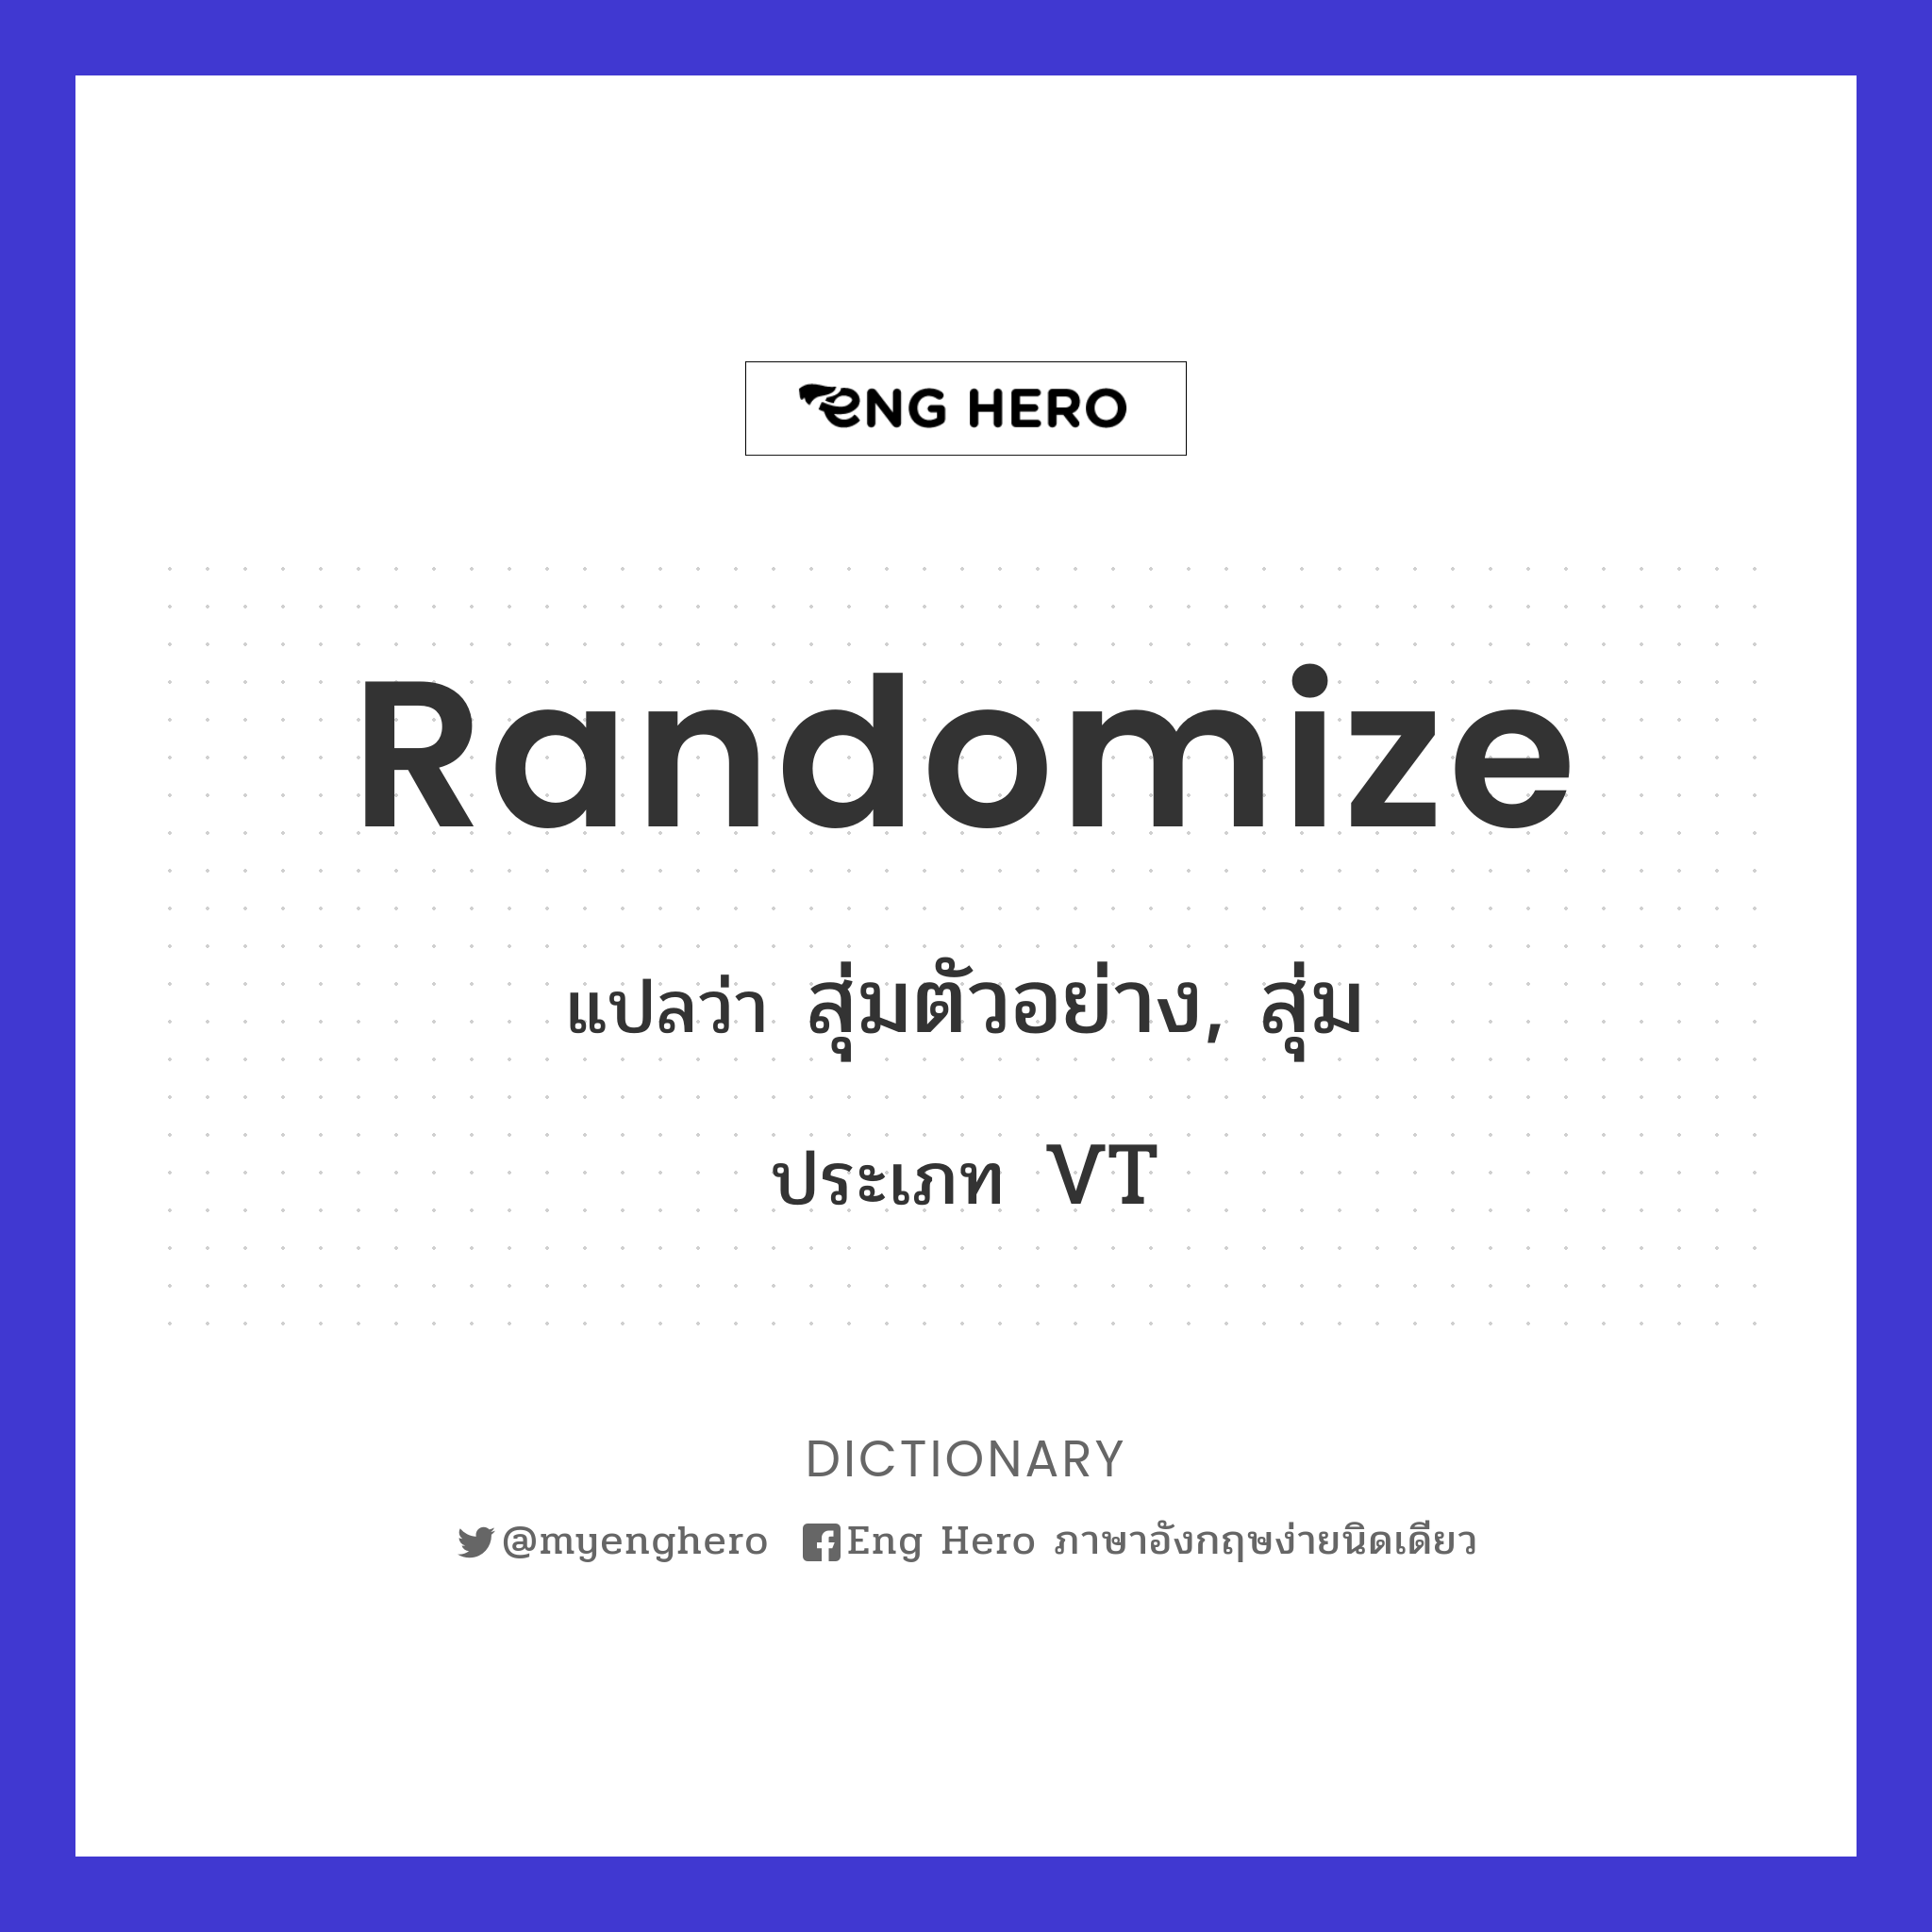 randomize